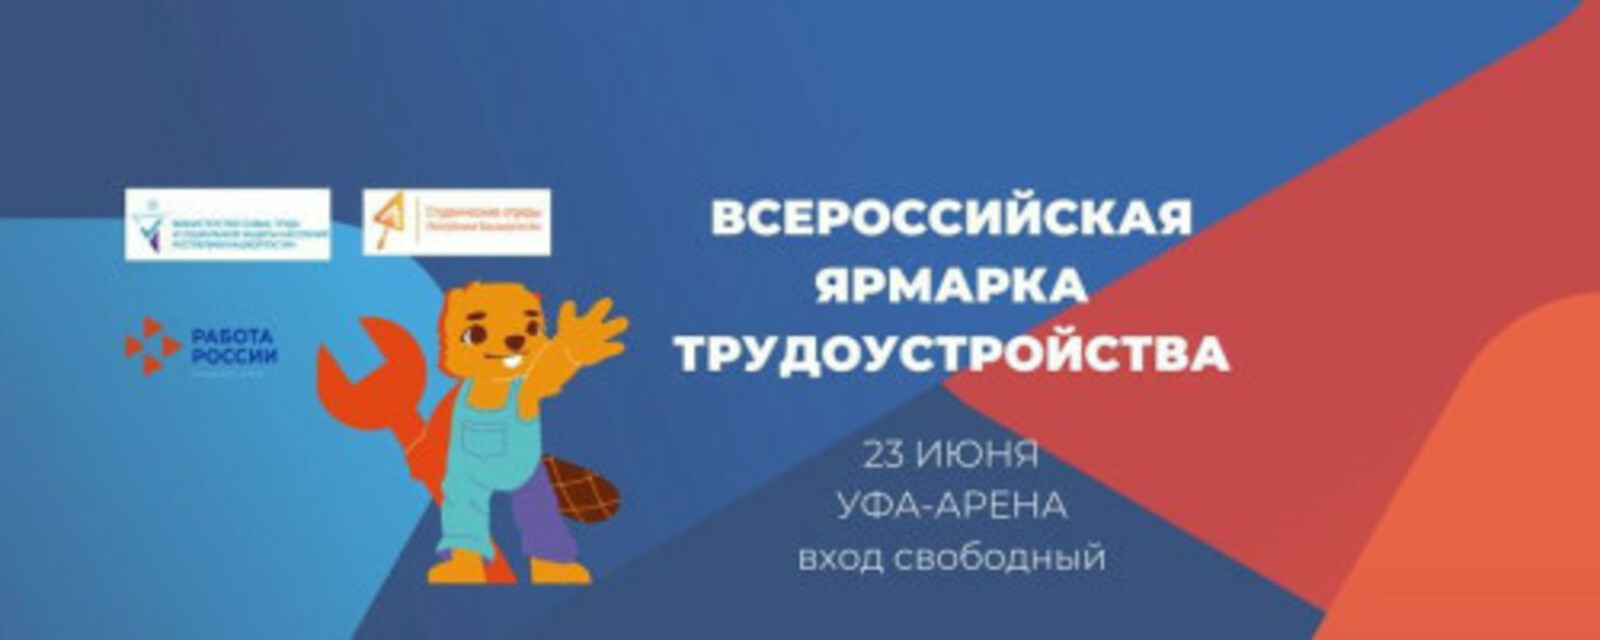 23 июня на площадке спортивного комплекса «Уфа-Арена» состоится федеральный этап Всероссийской ярмарки трудоустройства